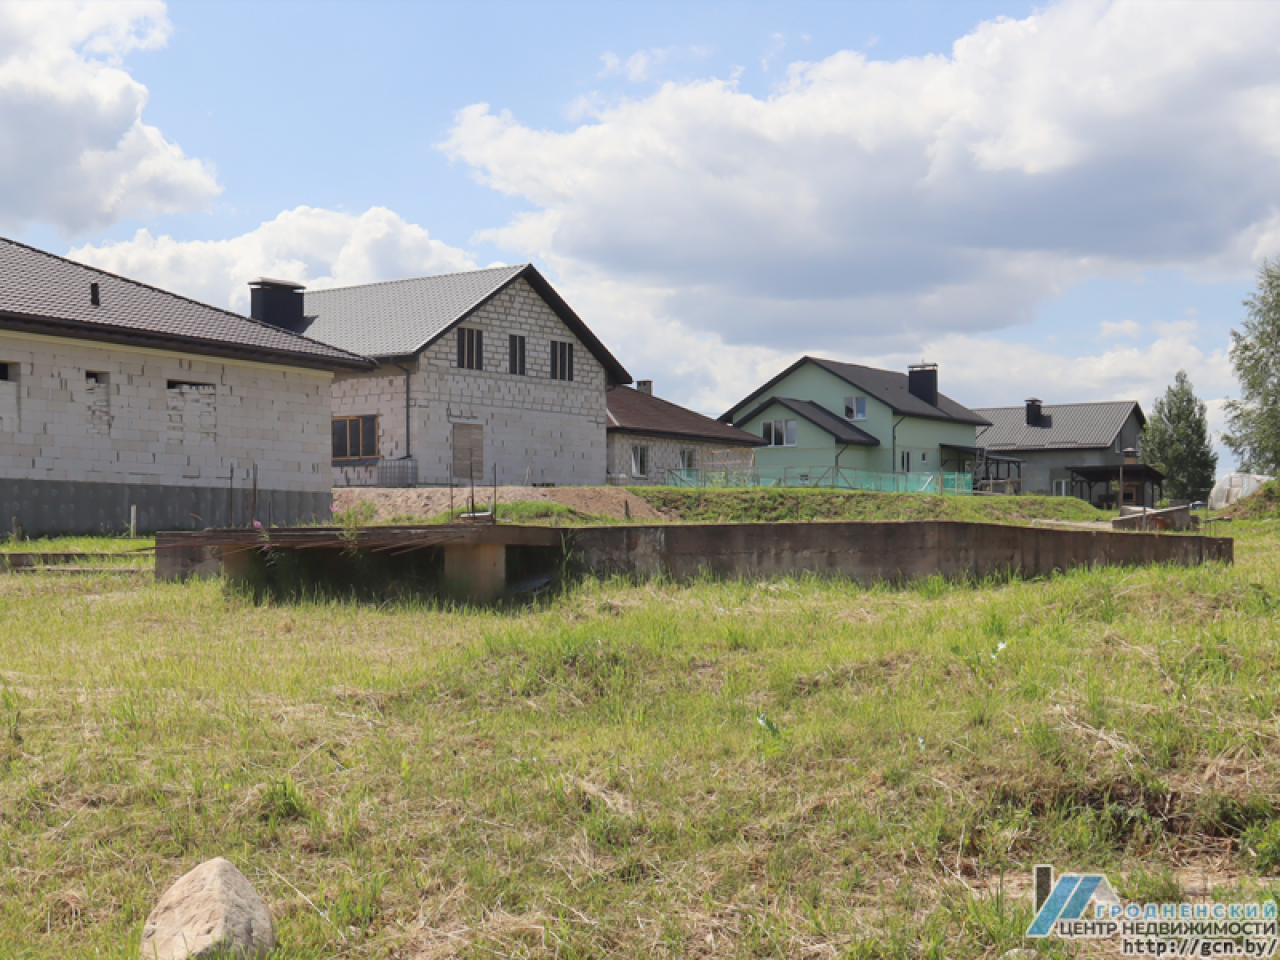 Недостроенные частные дома, медленное выявление пустующего жилья, нарушение планов по сносу: КГК Гродненской области выявил нарушения законодательства